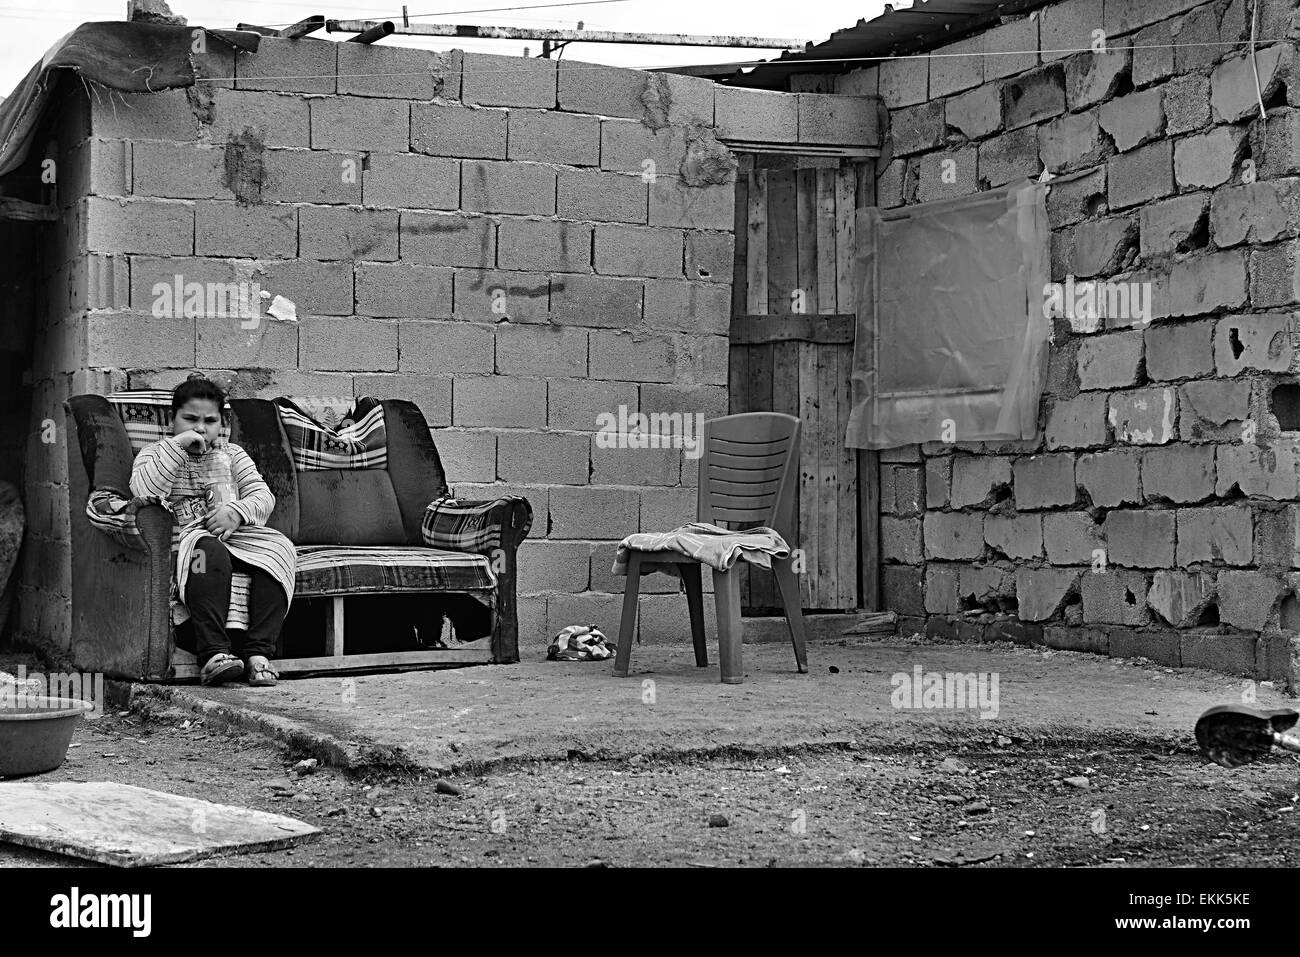 Ritratto di rifugiati che vivono senza tetto in Turchia. 2.4.2015 Reyhanli, Turchia Foto Stock